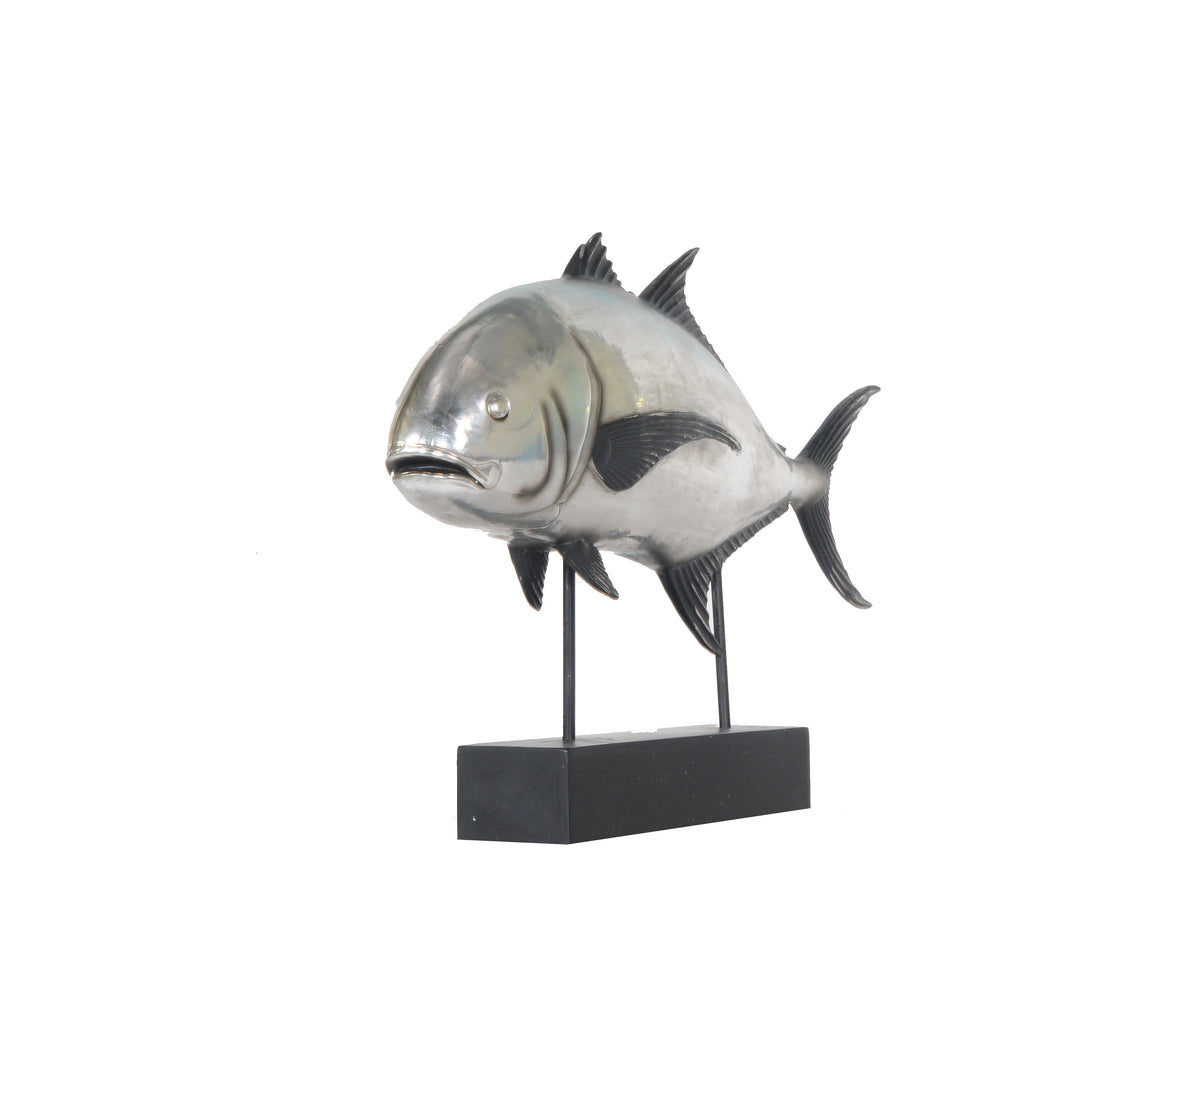 Tuna Fish Statue,statue,Adley & Company Inc.